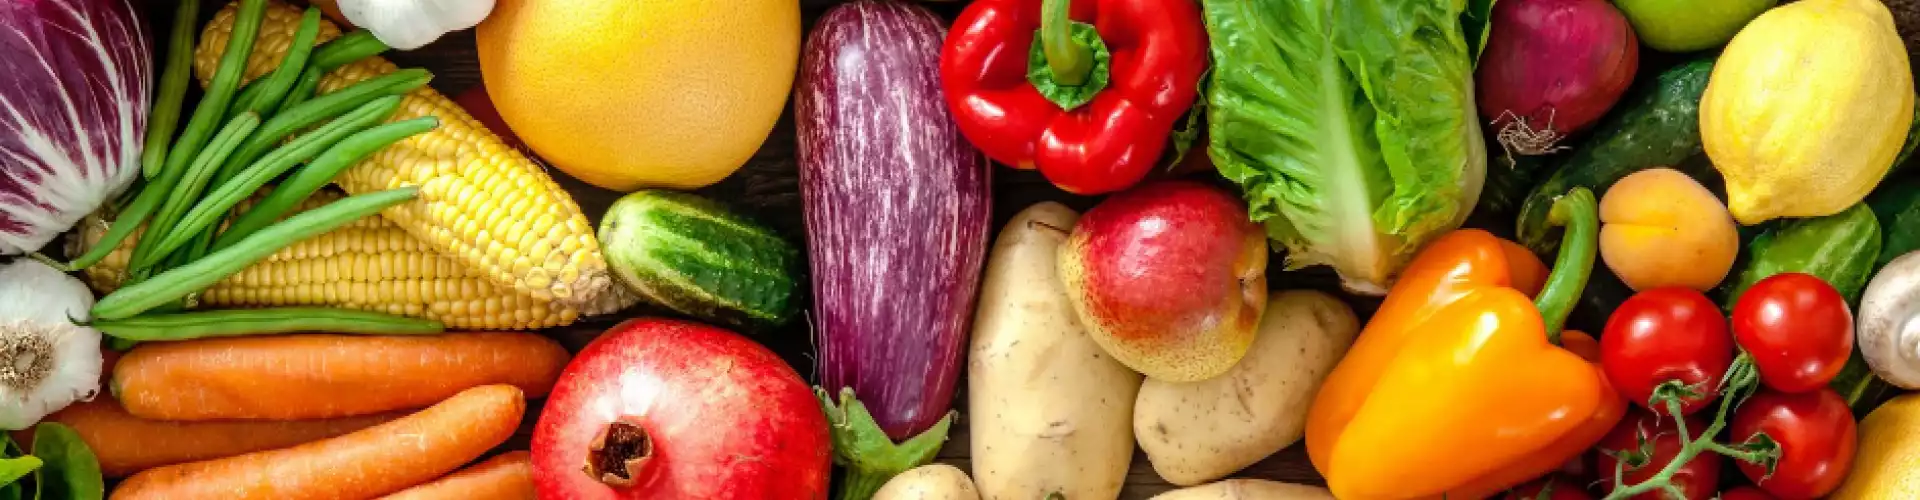 16 maneras de usar una verdura